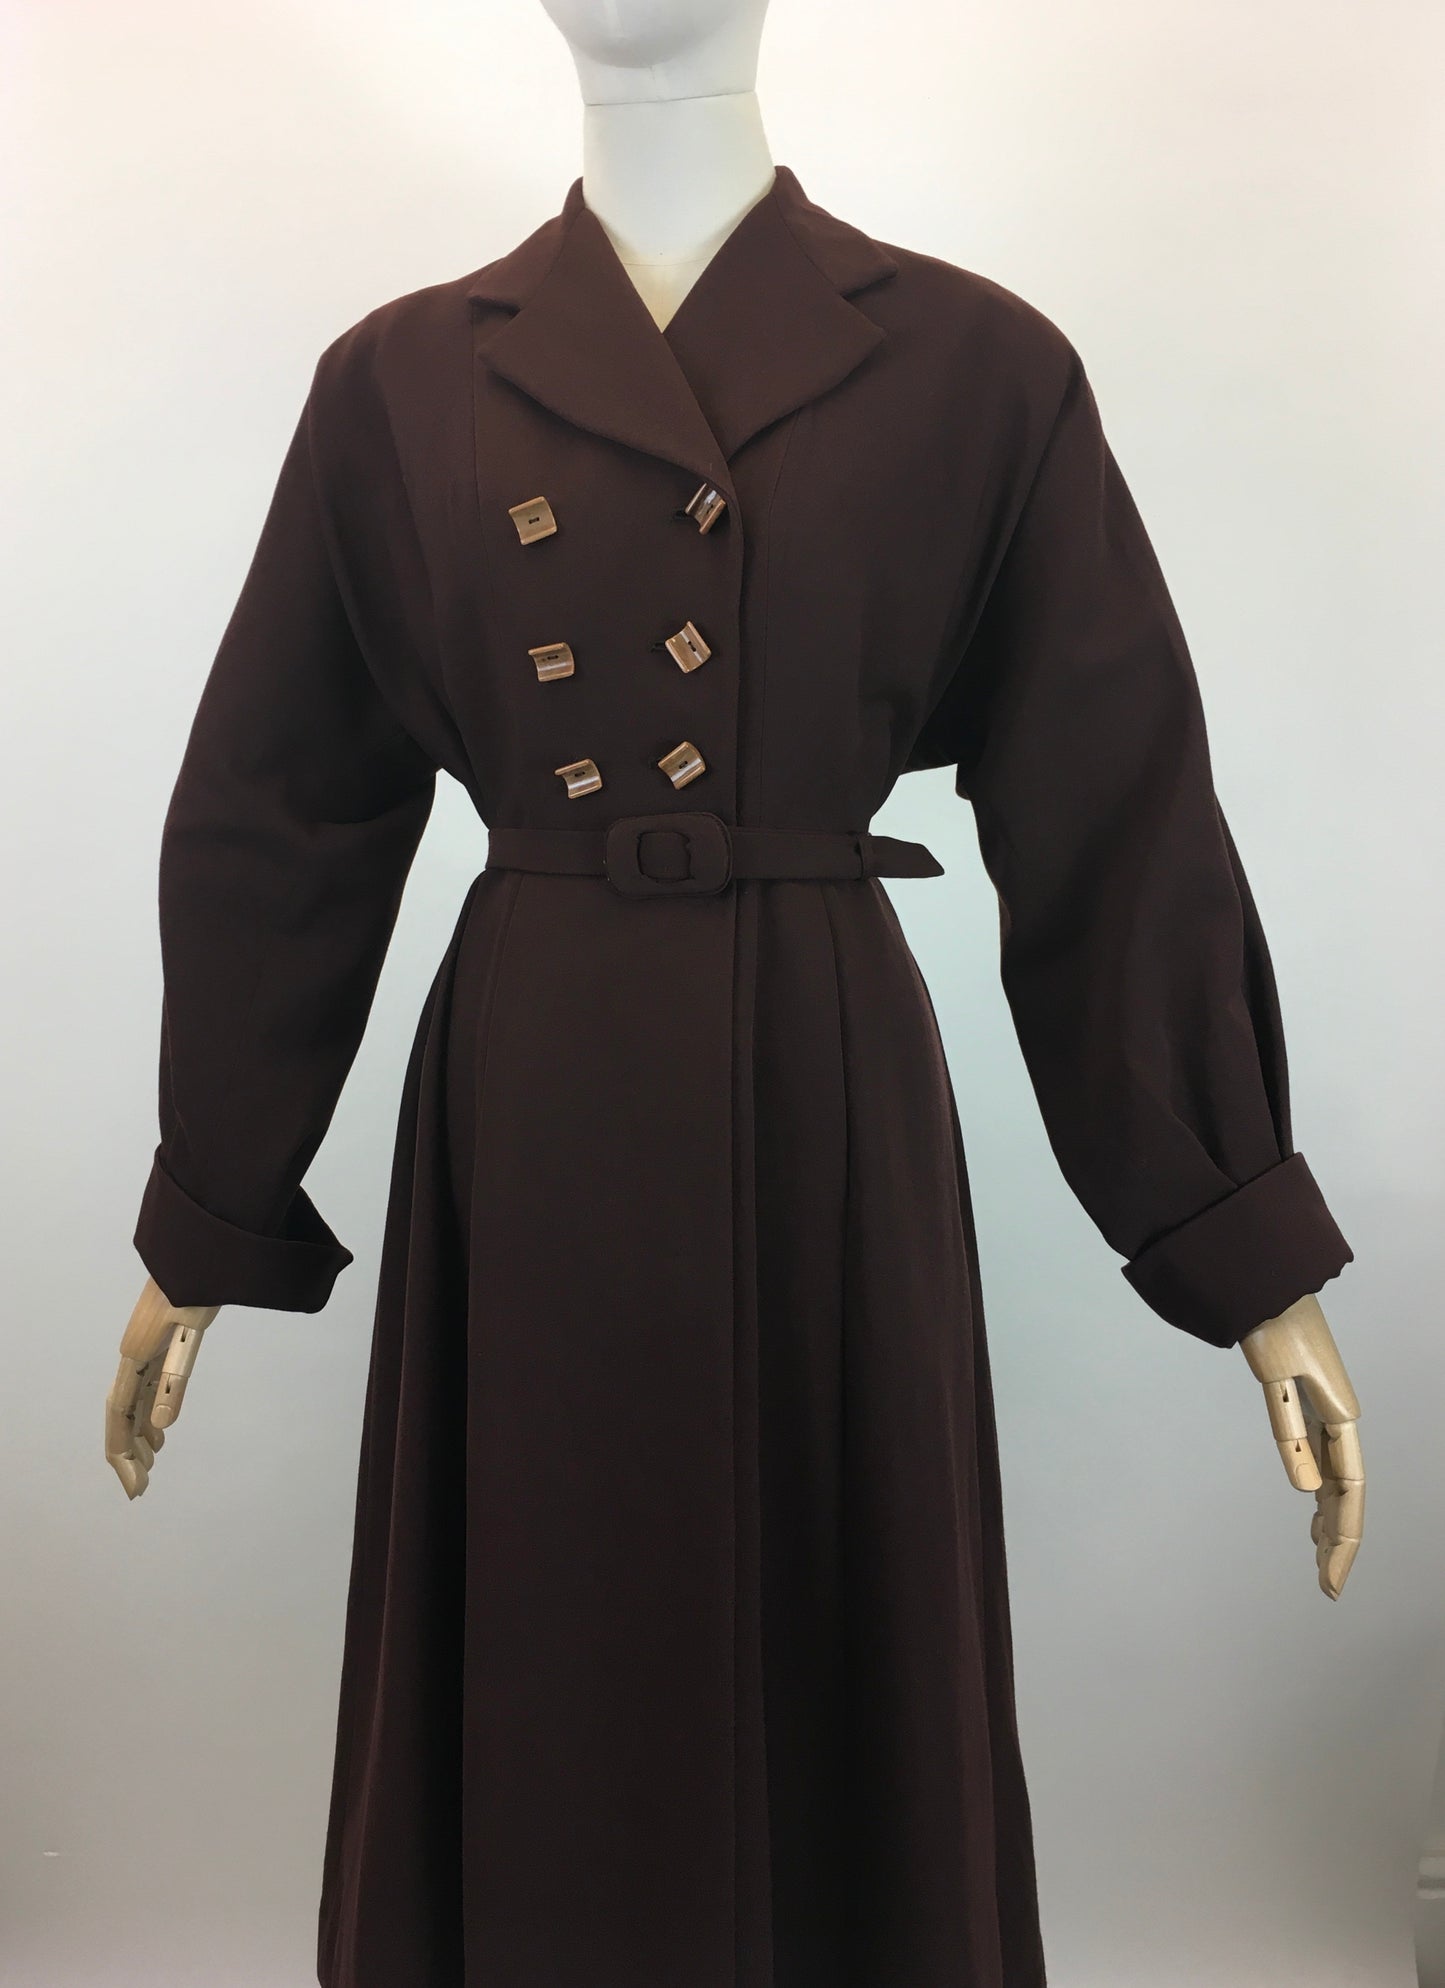 Original 1940's Stunning Gaberdine Coat - In A Warm Chocolate Brown